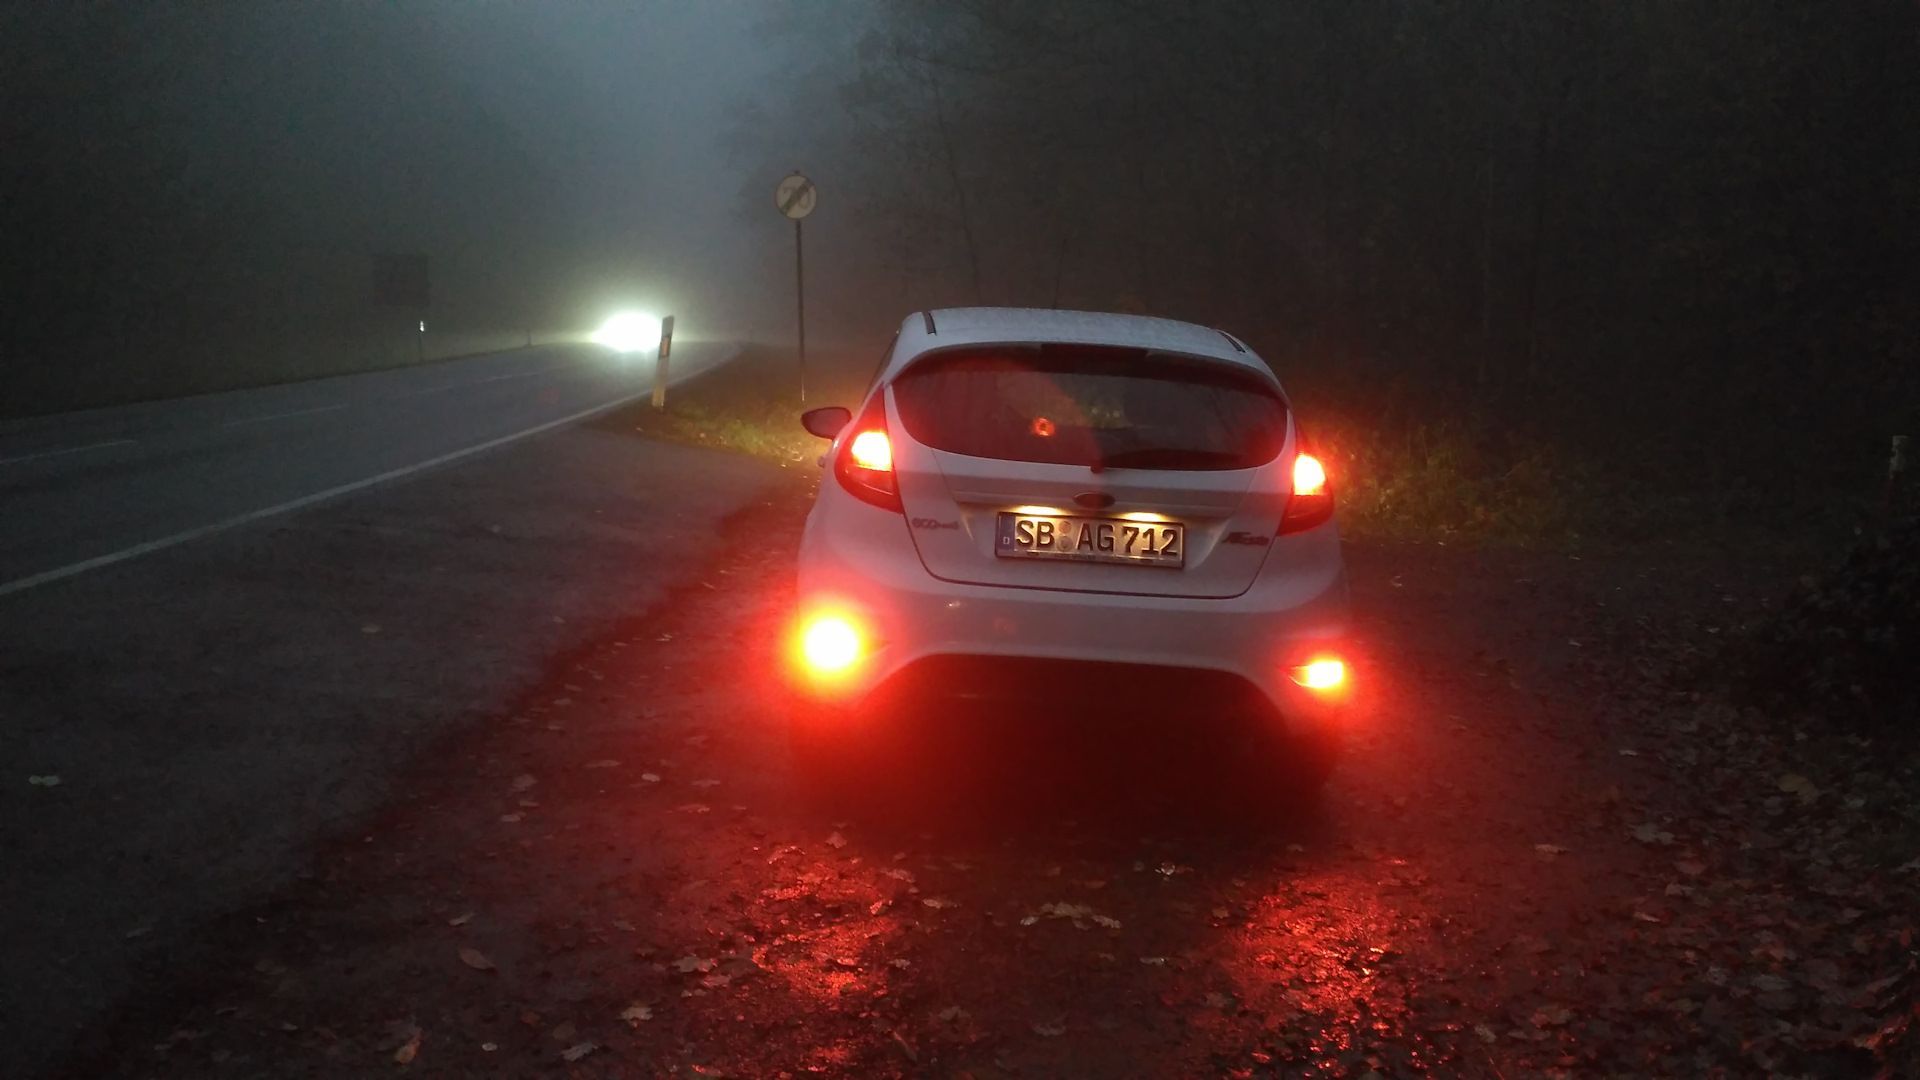 Ford Fiesta противотуманки задние. Задняя противотуманная фара в тумане Солярис. Свет противотуманных фар Джентра 2013. Противотуманныйый фонари на машине.